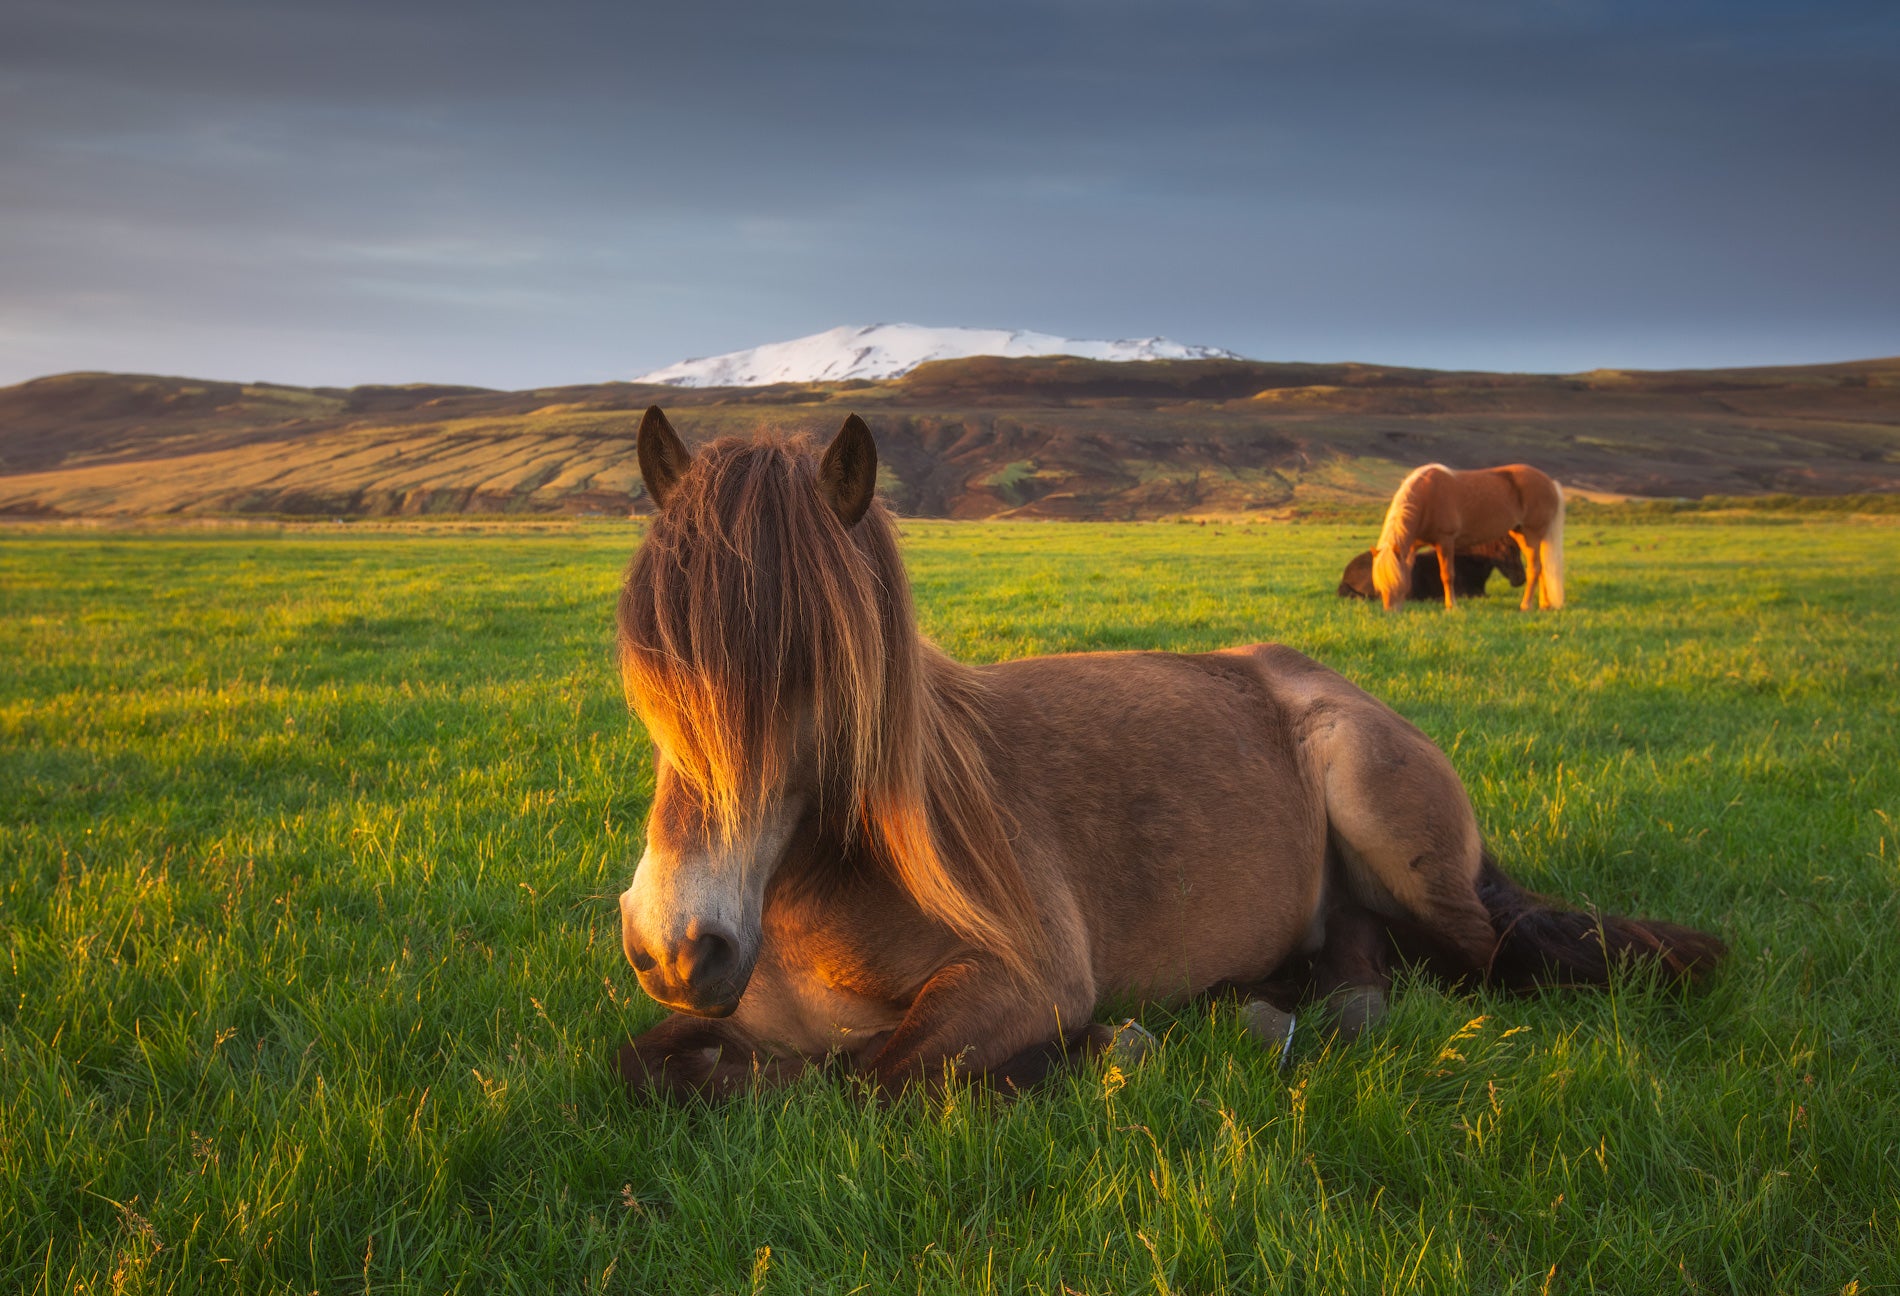 The Horse of Hekla m image